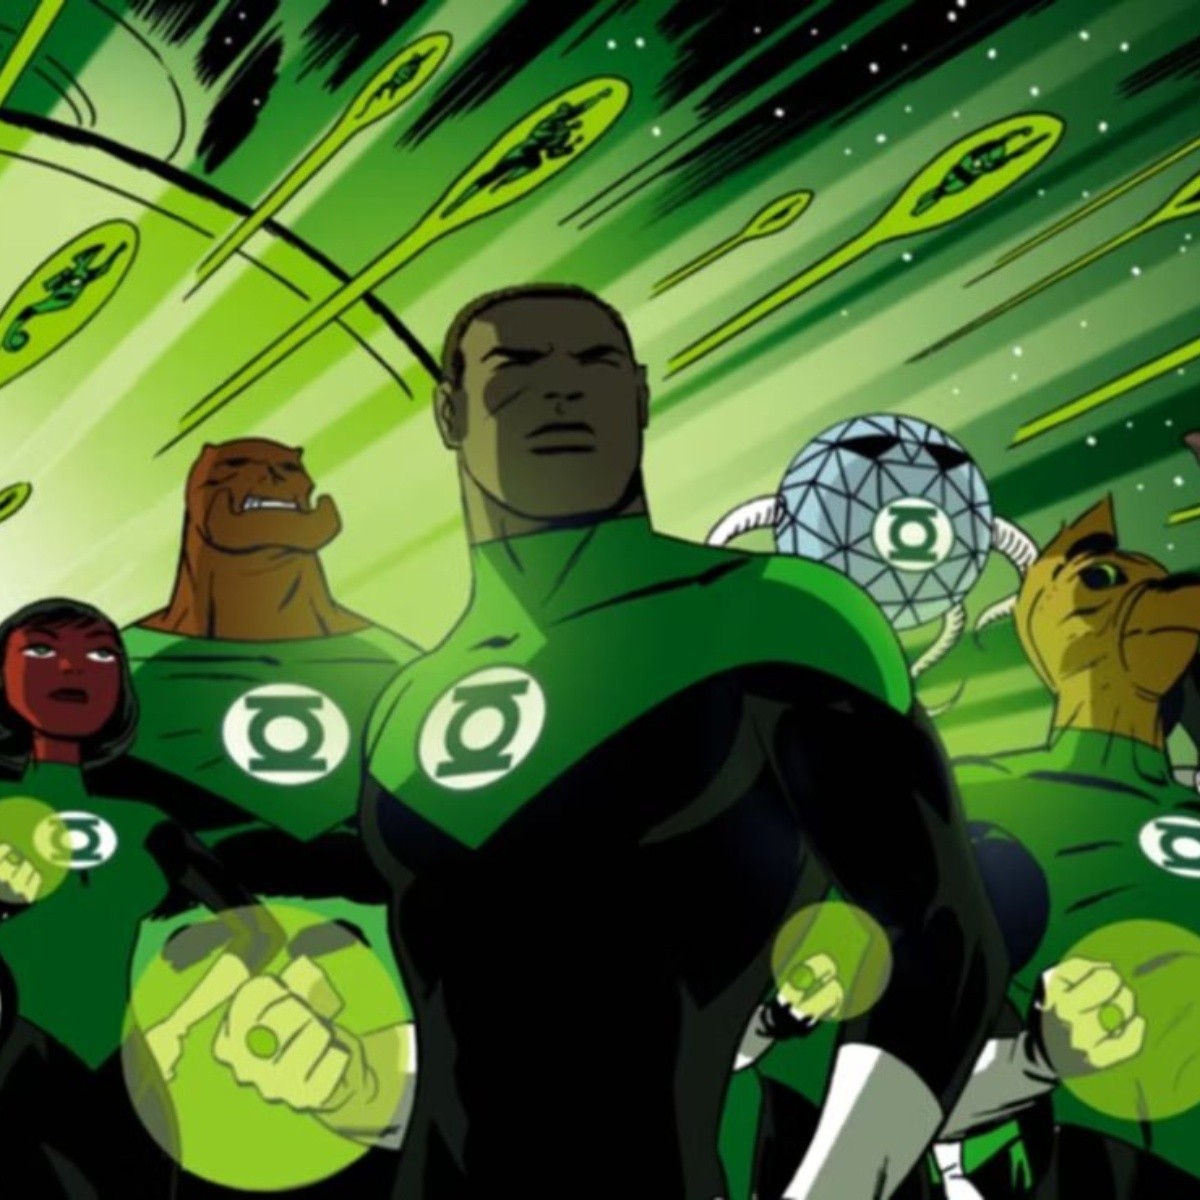 oficialmente los green lantern corps ahora son villanos en dc